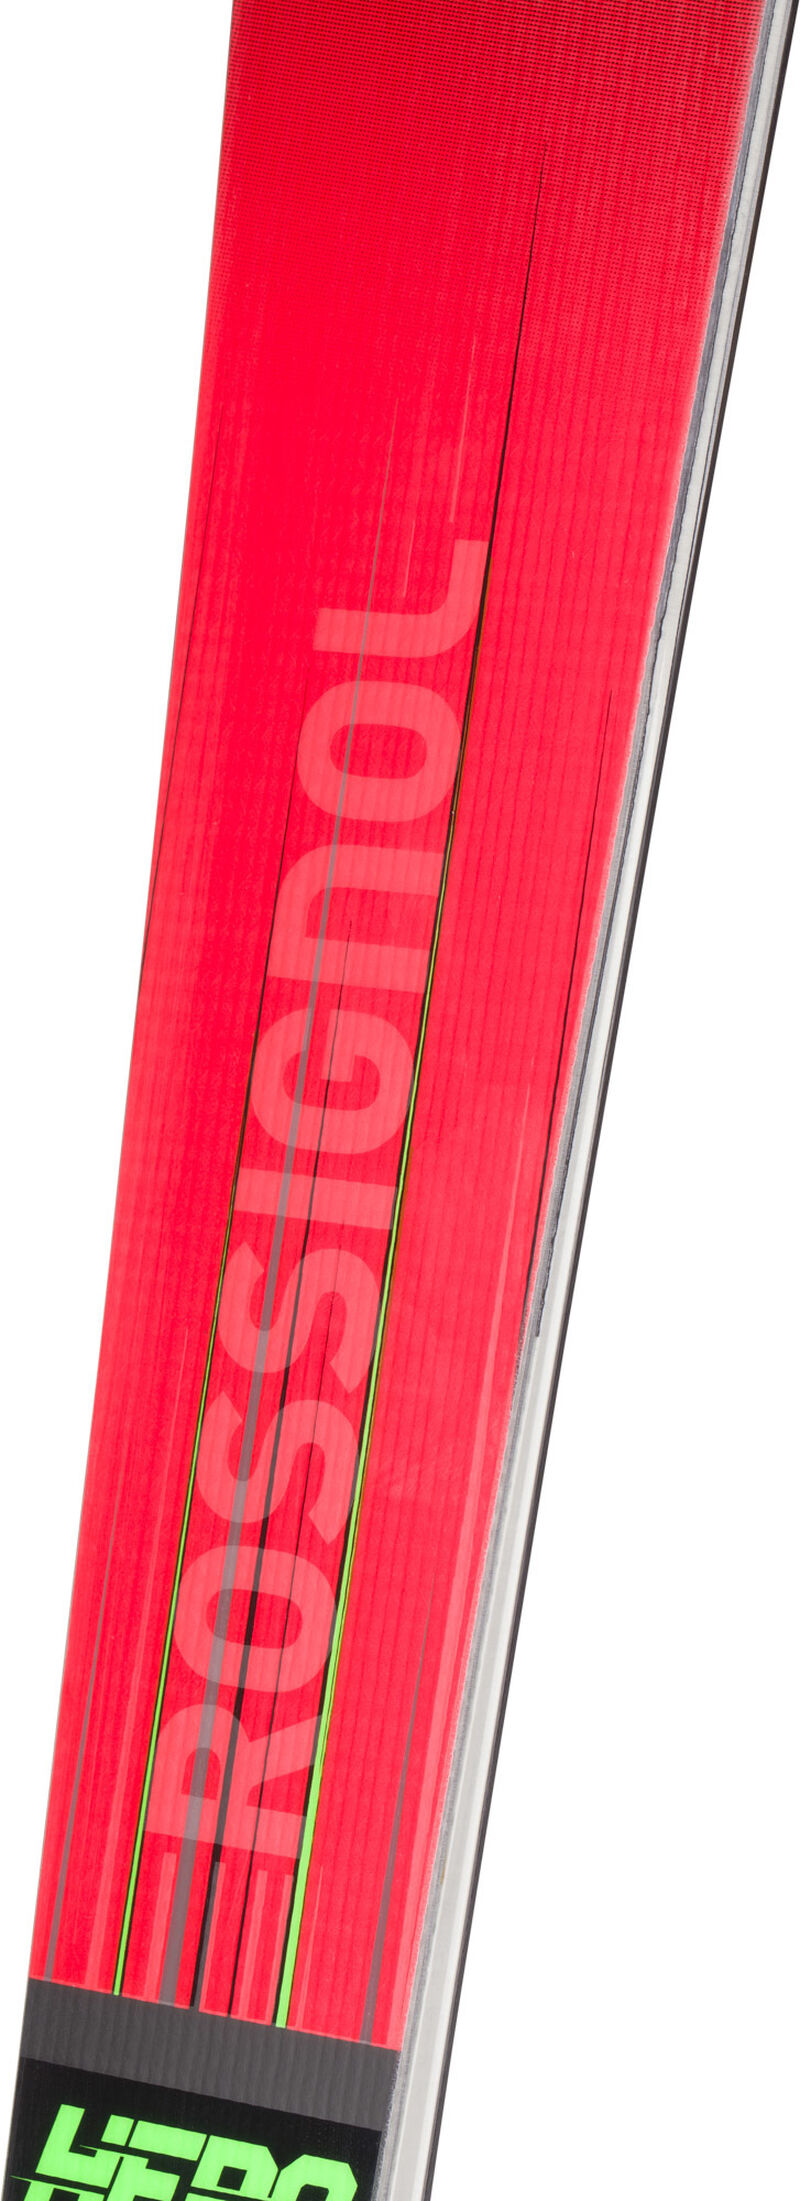 Rossignol UNISEX RACING SKIER HERO ATHLETE SL 150 R22 red